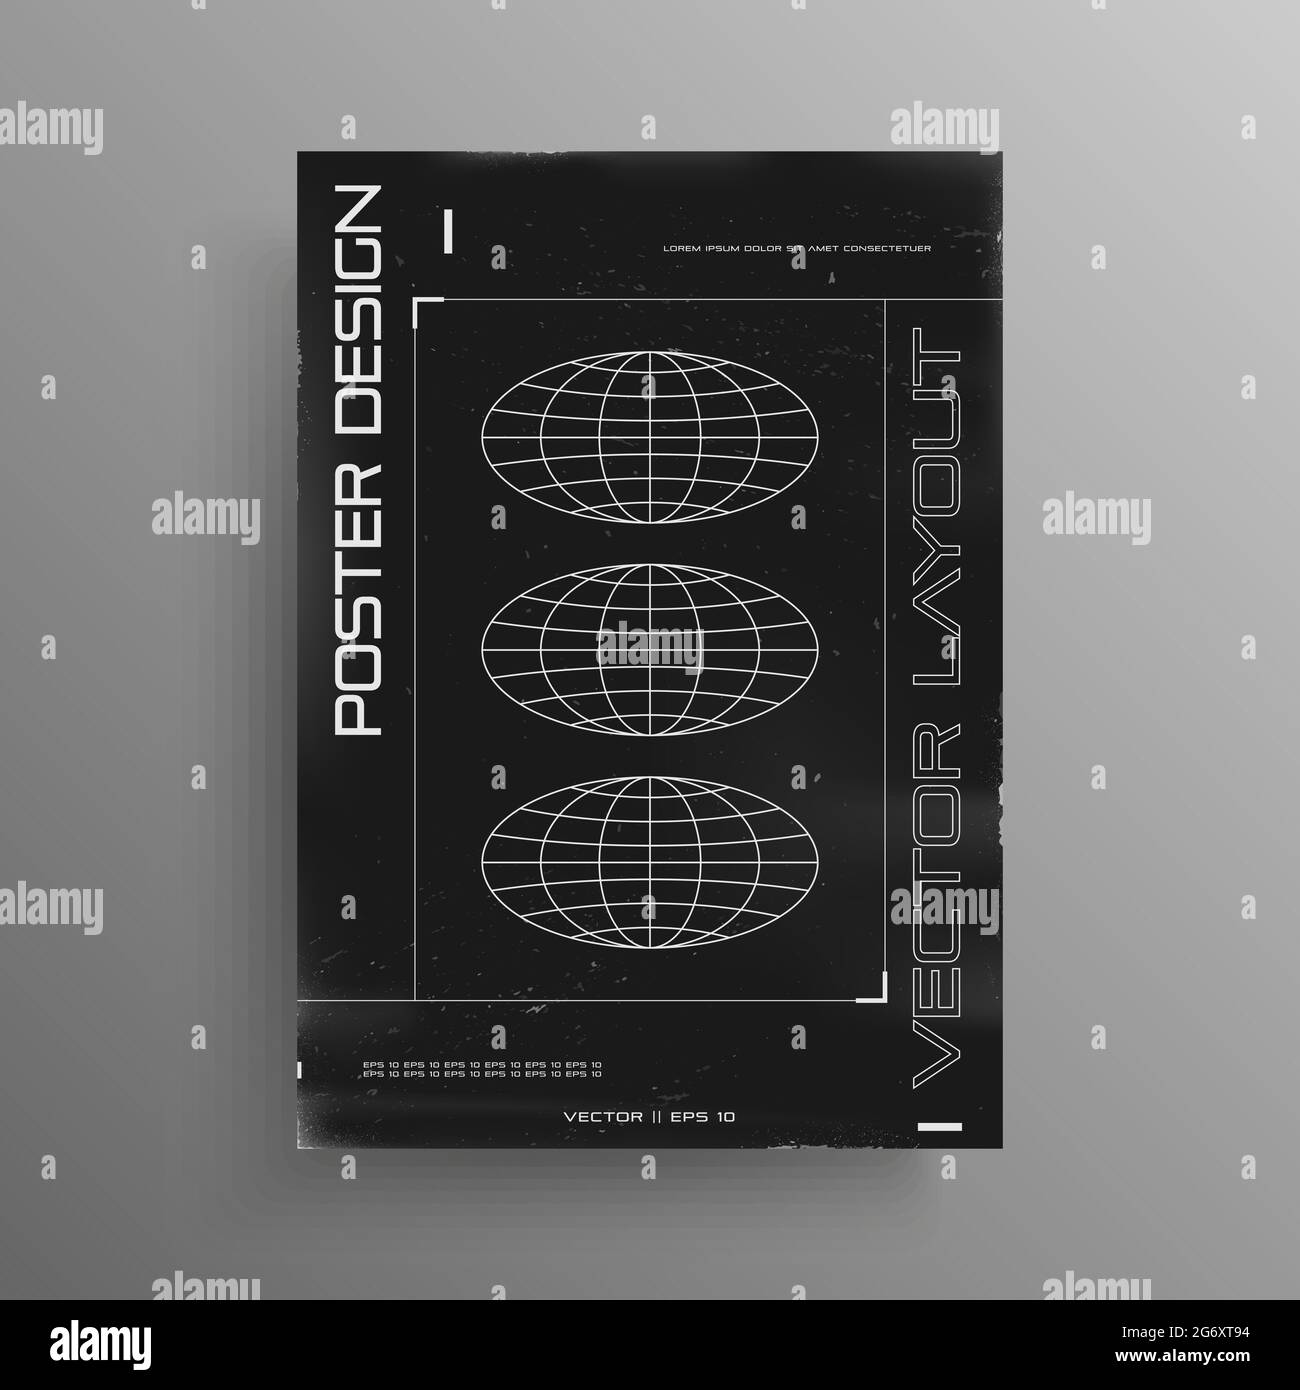 Poster retrovuturistico in bianco e nero con pianeti ellittici. Poster retrò di copertina cyberpunk con elementi HUD. Modello per la progettazione di volantini per Illustrazione Vettoriale